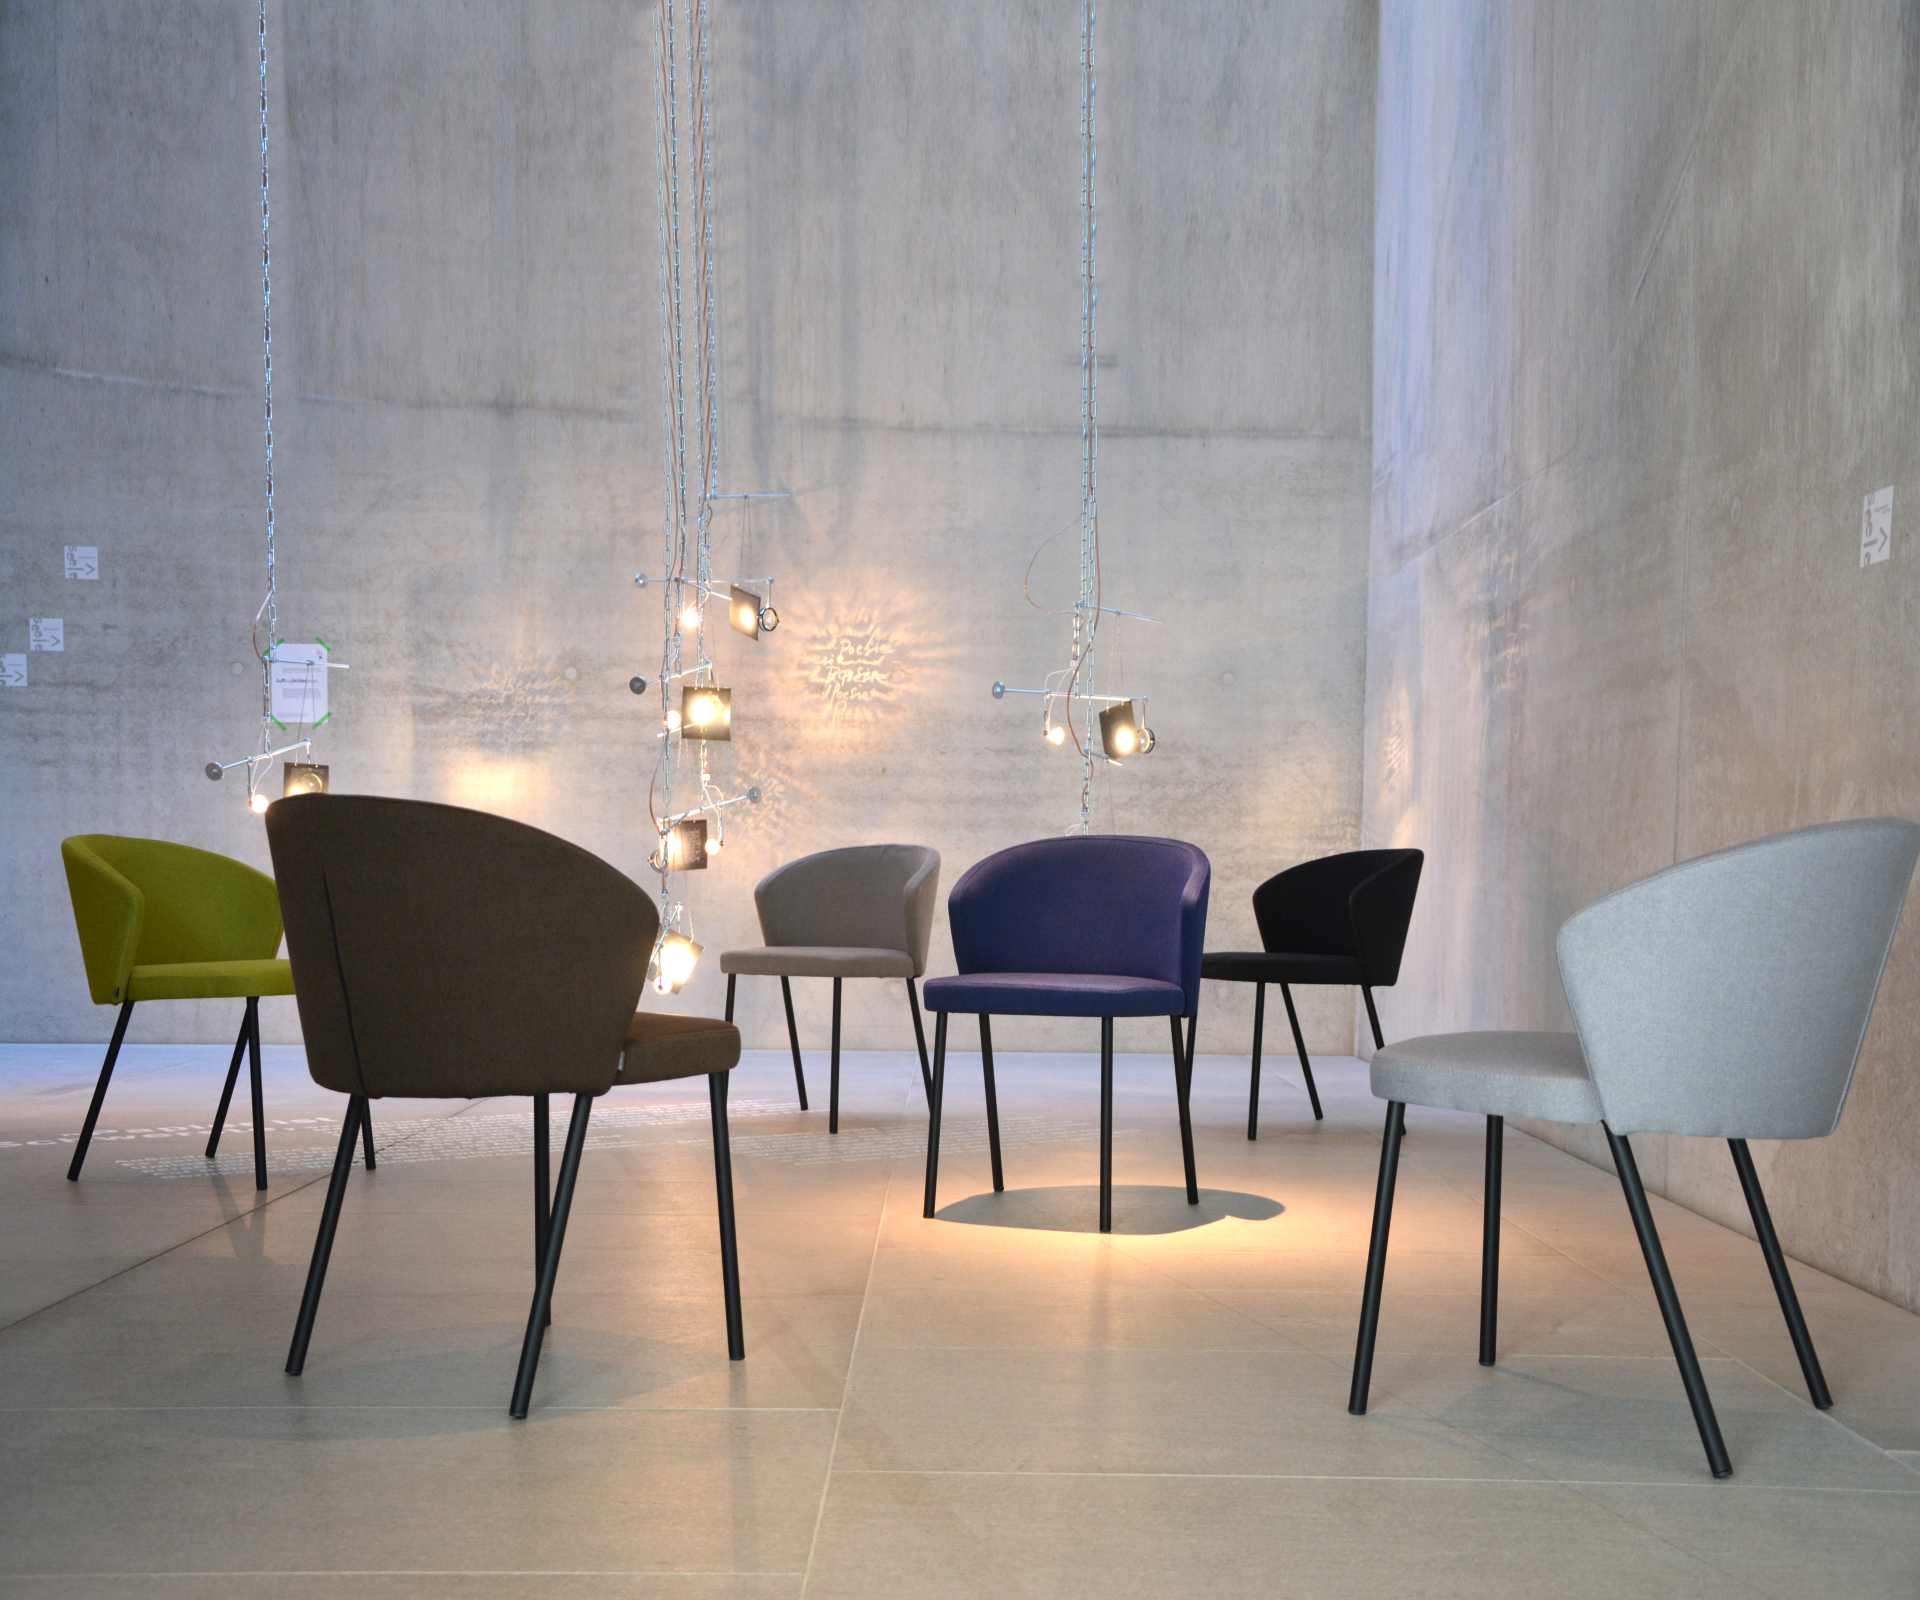 Der moderne Stuhl Mila wurde aus einem Metall Gestell hergestellt. Die Sitz- und Rückenfläche ist aus einem Stoff Bezug. Die Farbe des Stuhls ist Blau. Es ist ein Produkt der Marke Jan Kurtz.